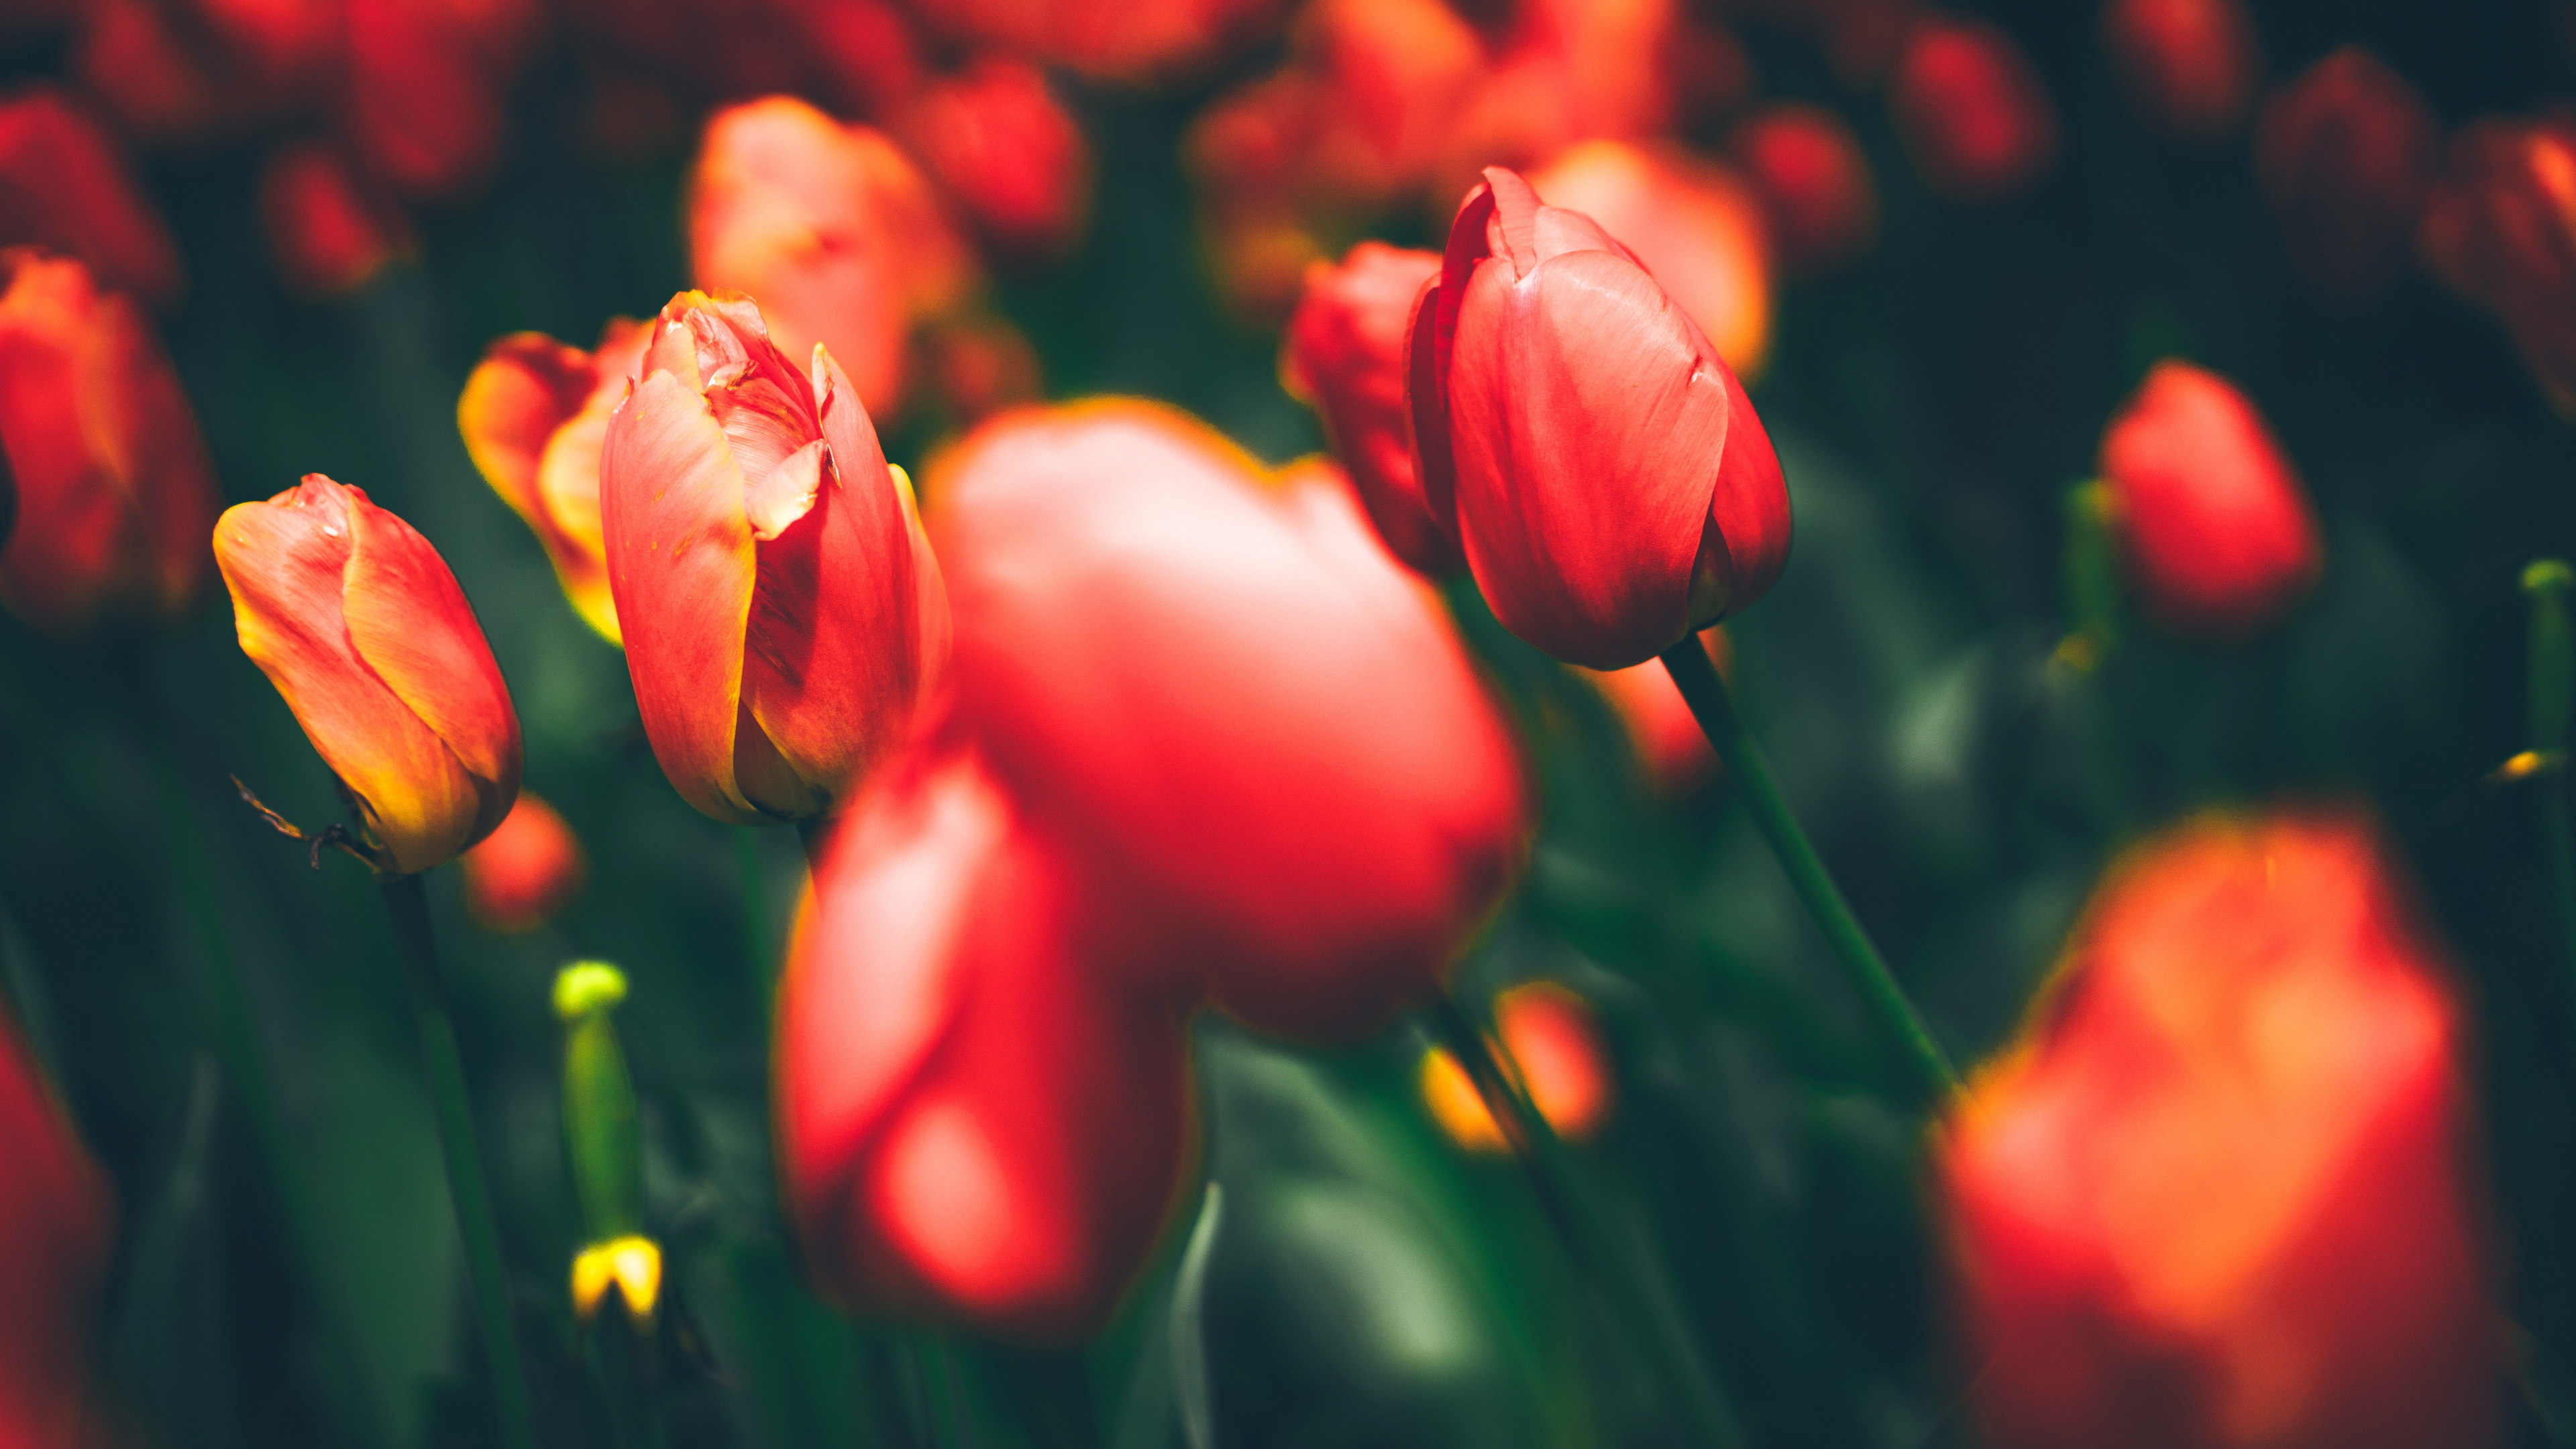 Tulipes Rouges en Fleurs Pendant la Journée. Wallpaper in 3840x2160 Resolution